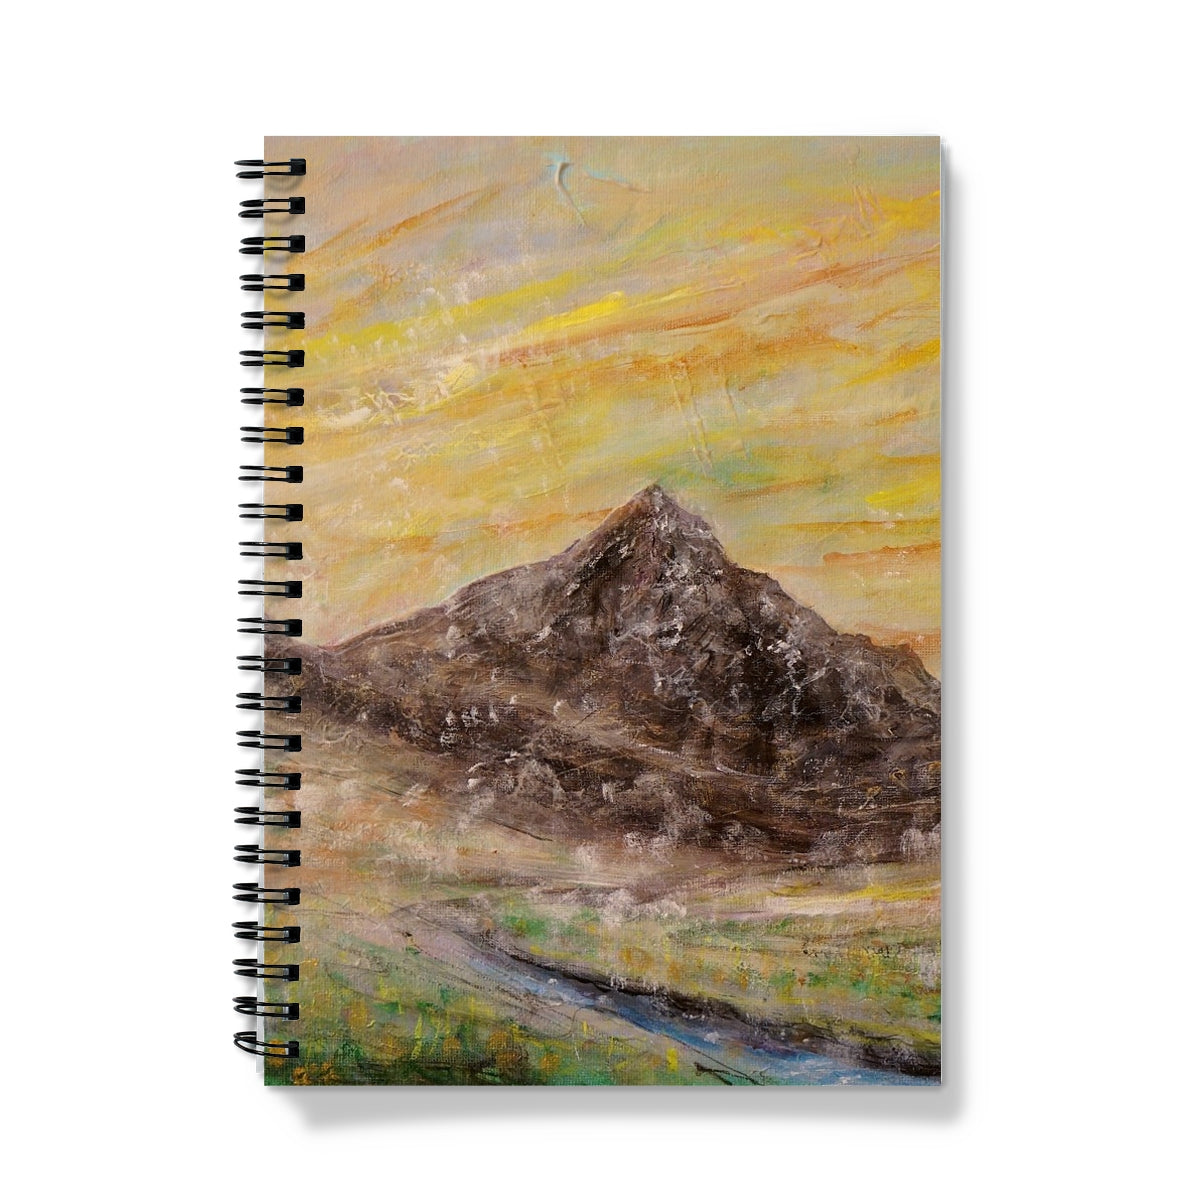 Glen Rosa Mist Arran Art Gifts Notebook-Journals & Notebooks-Arran Art Gallery-A4-Graph-Paintings, Prints, Homeware, Art Gifts From Scotland By Scottish Artist Kevin Hunter